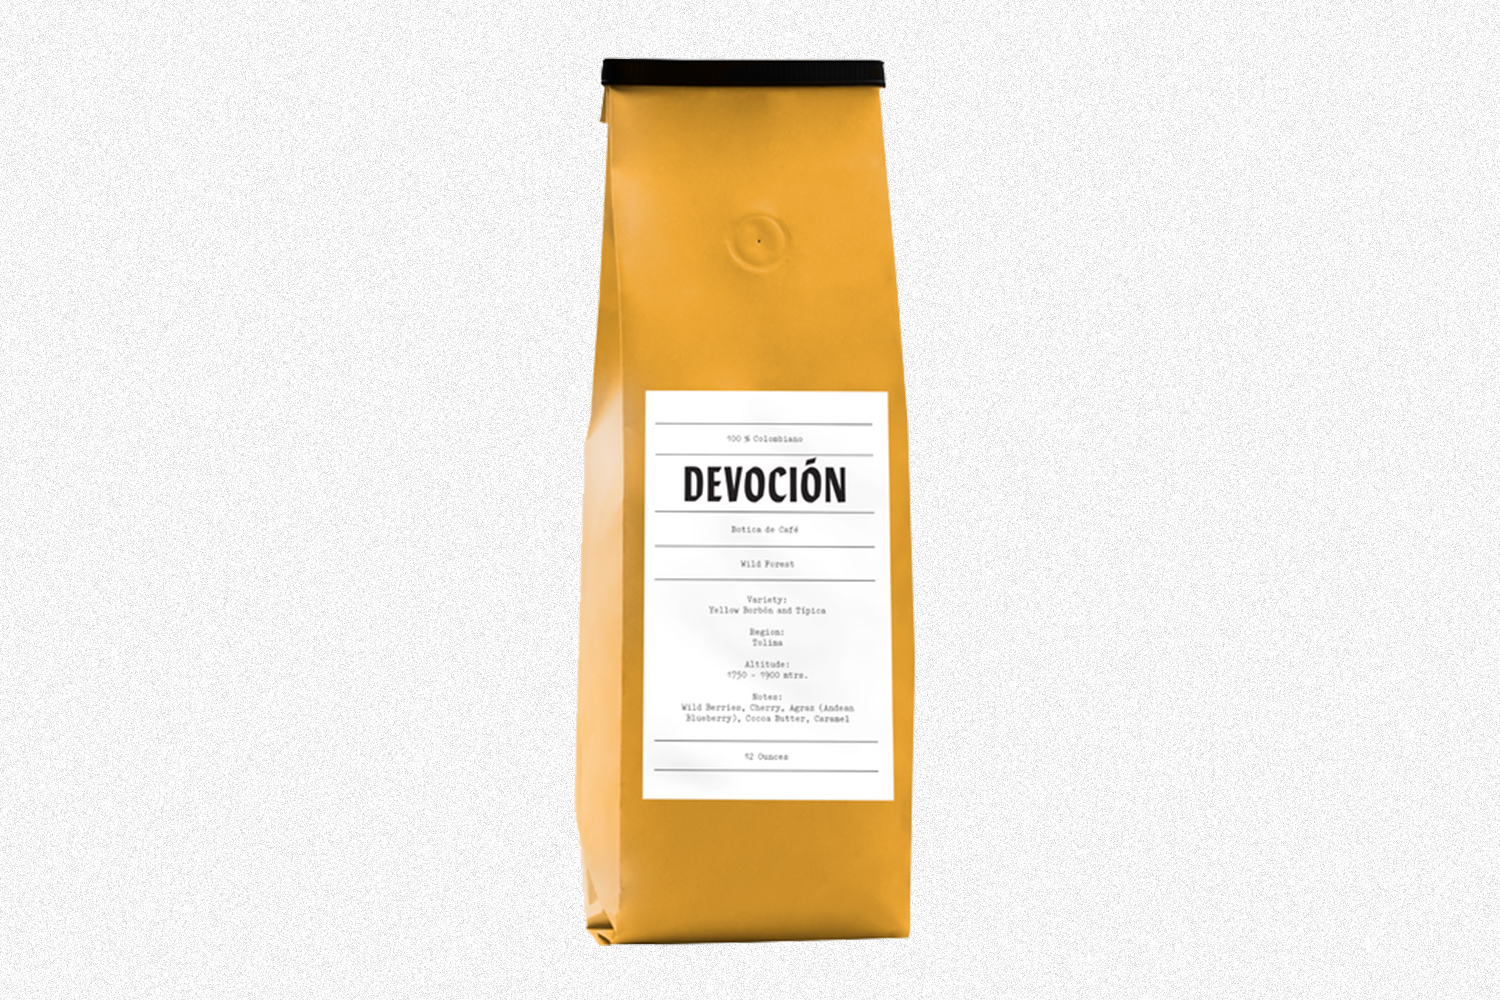 A yellow bag of Devoción coffee beans